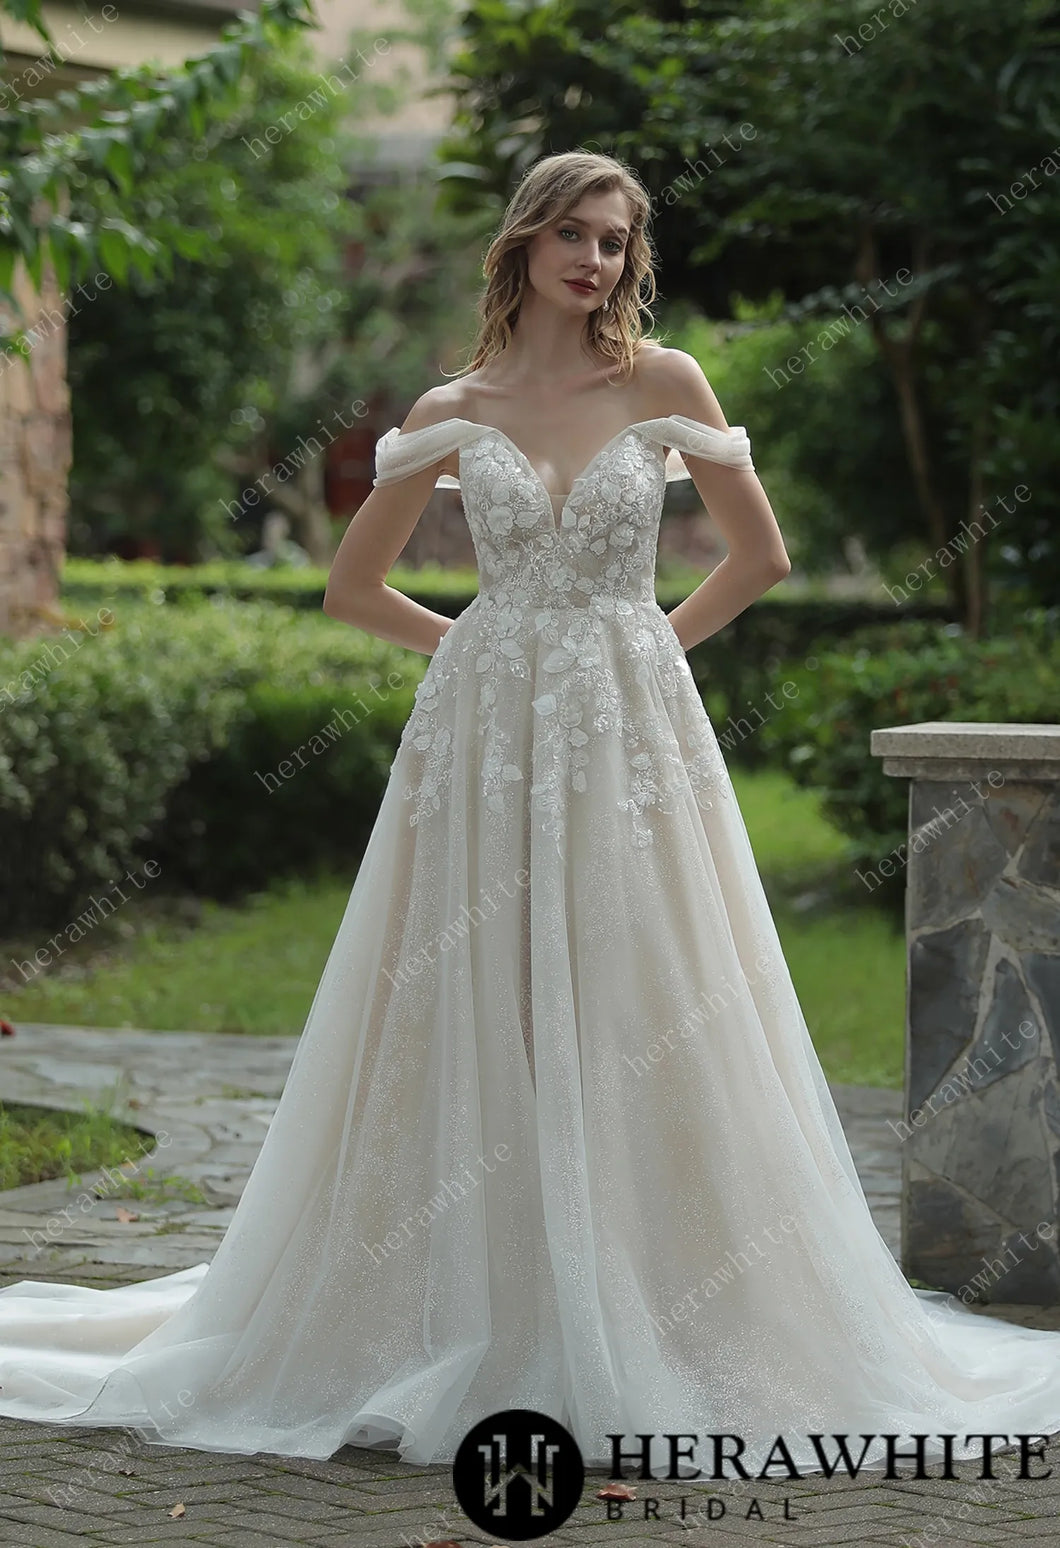 HERAWHITE - HW3036 - Elegant Floral 3D Lace Wedding Dress With Off-Shoulder Straps